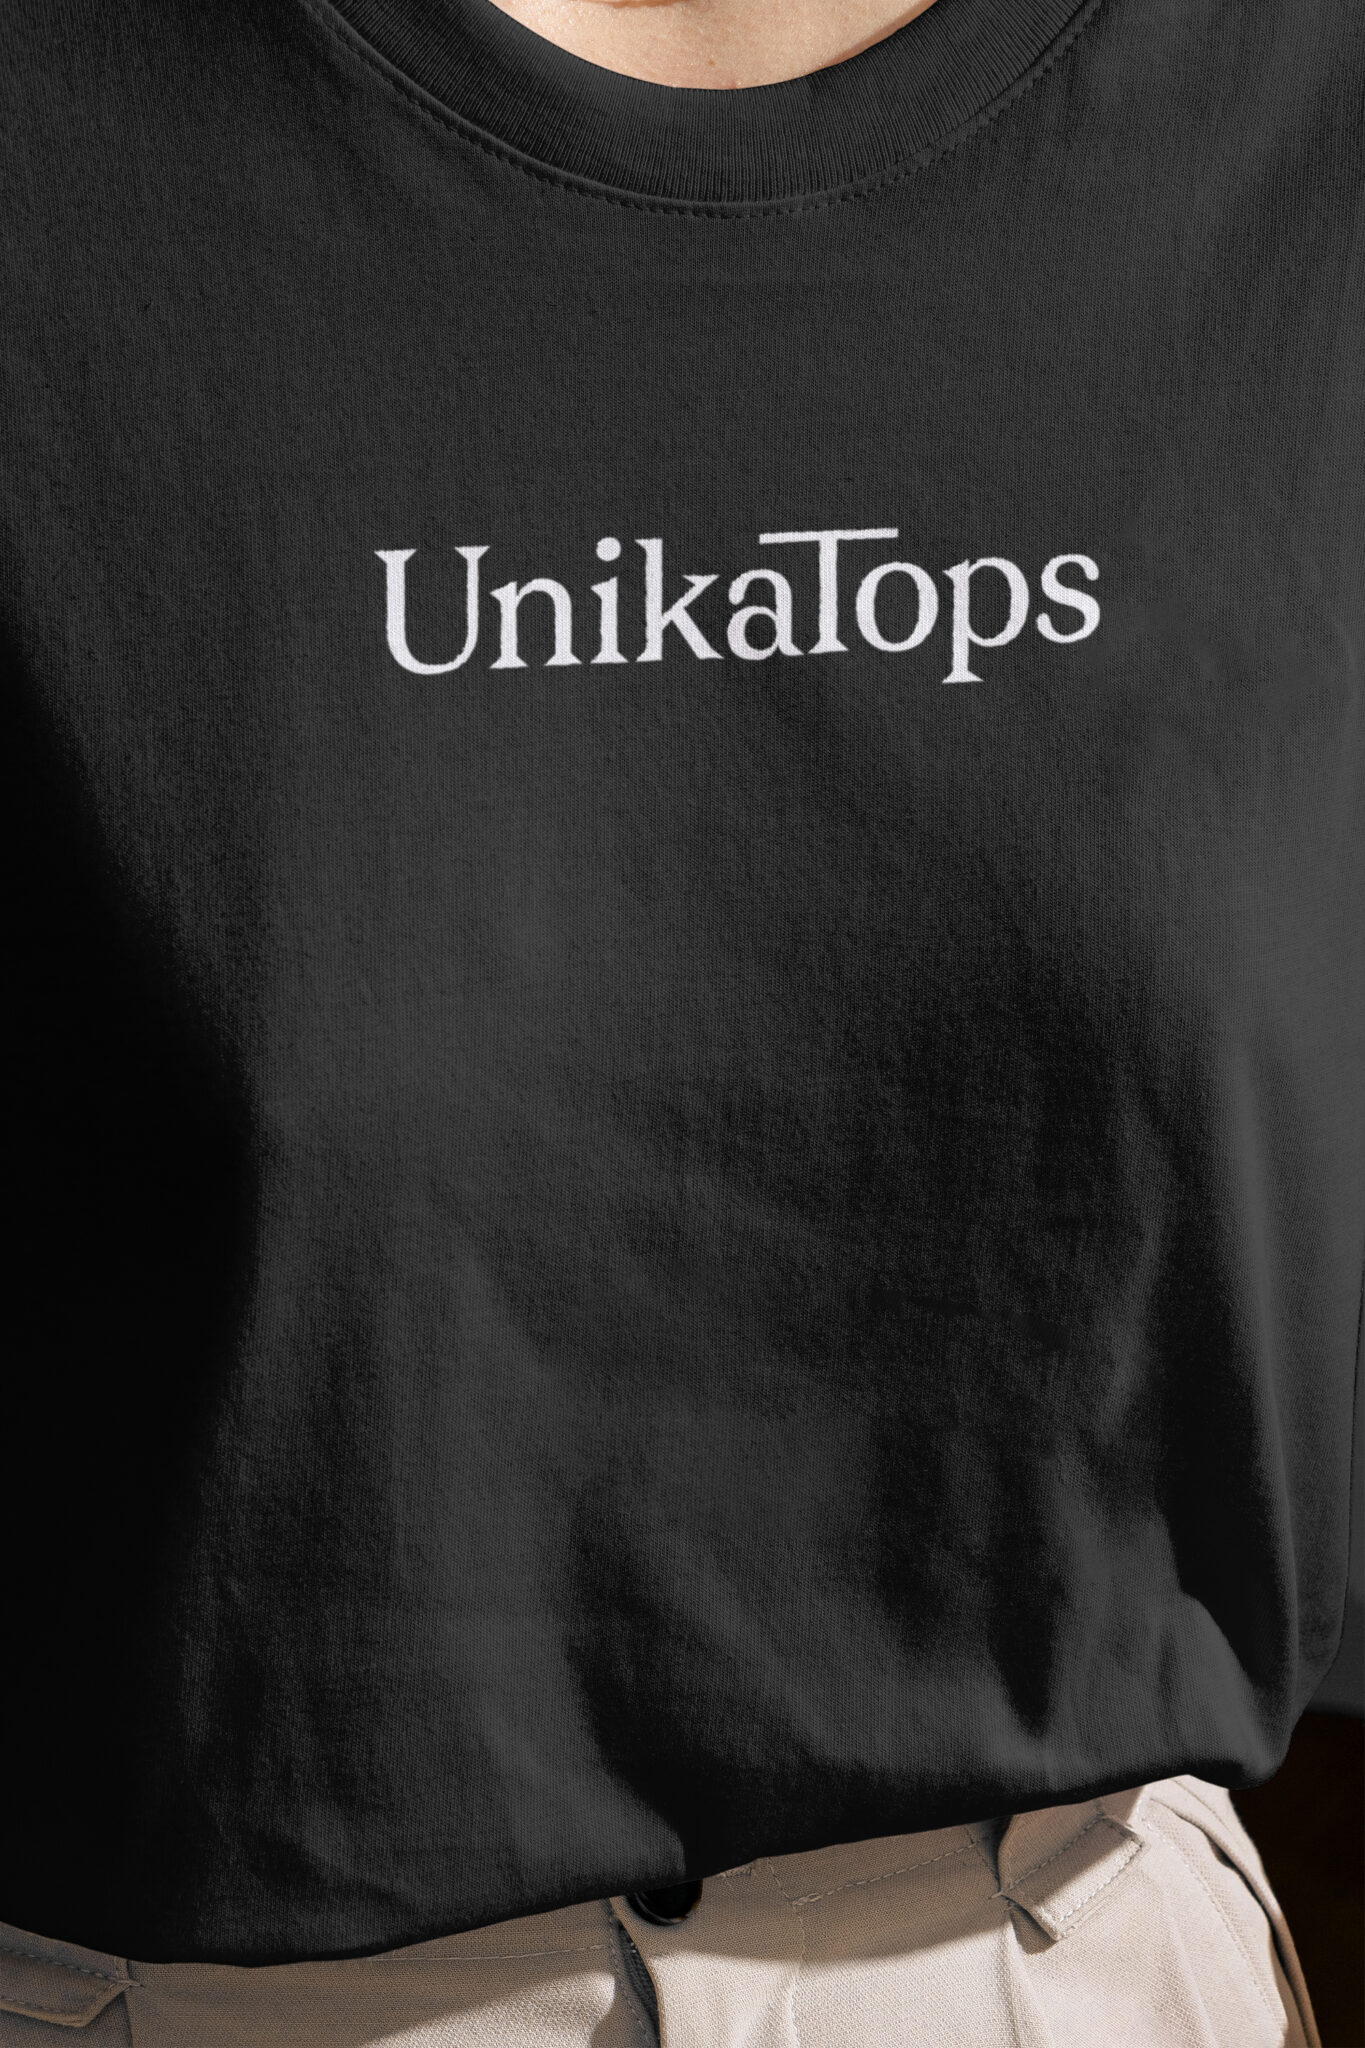 Unikatops Logo mocked up on a black Tshirt